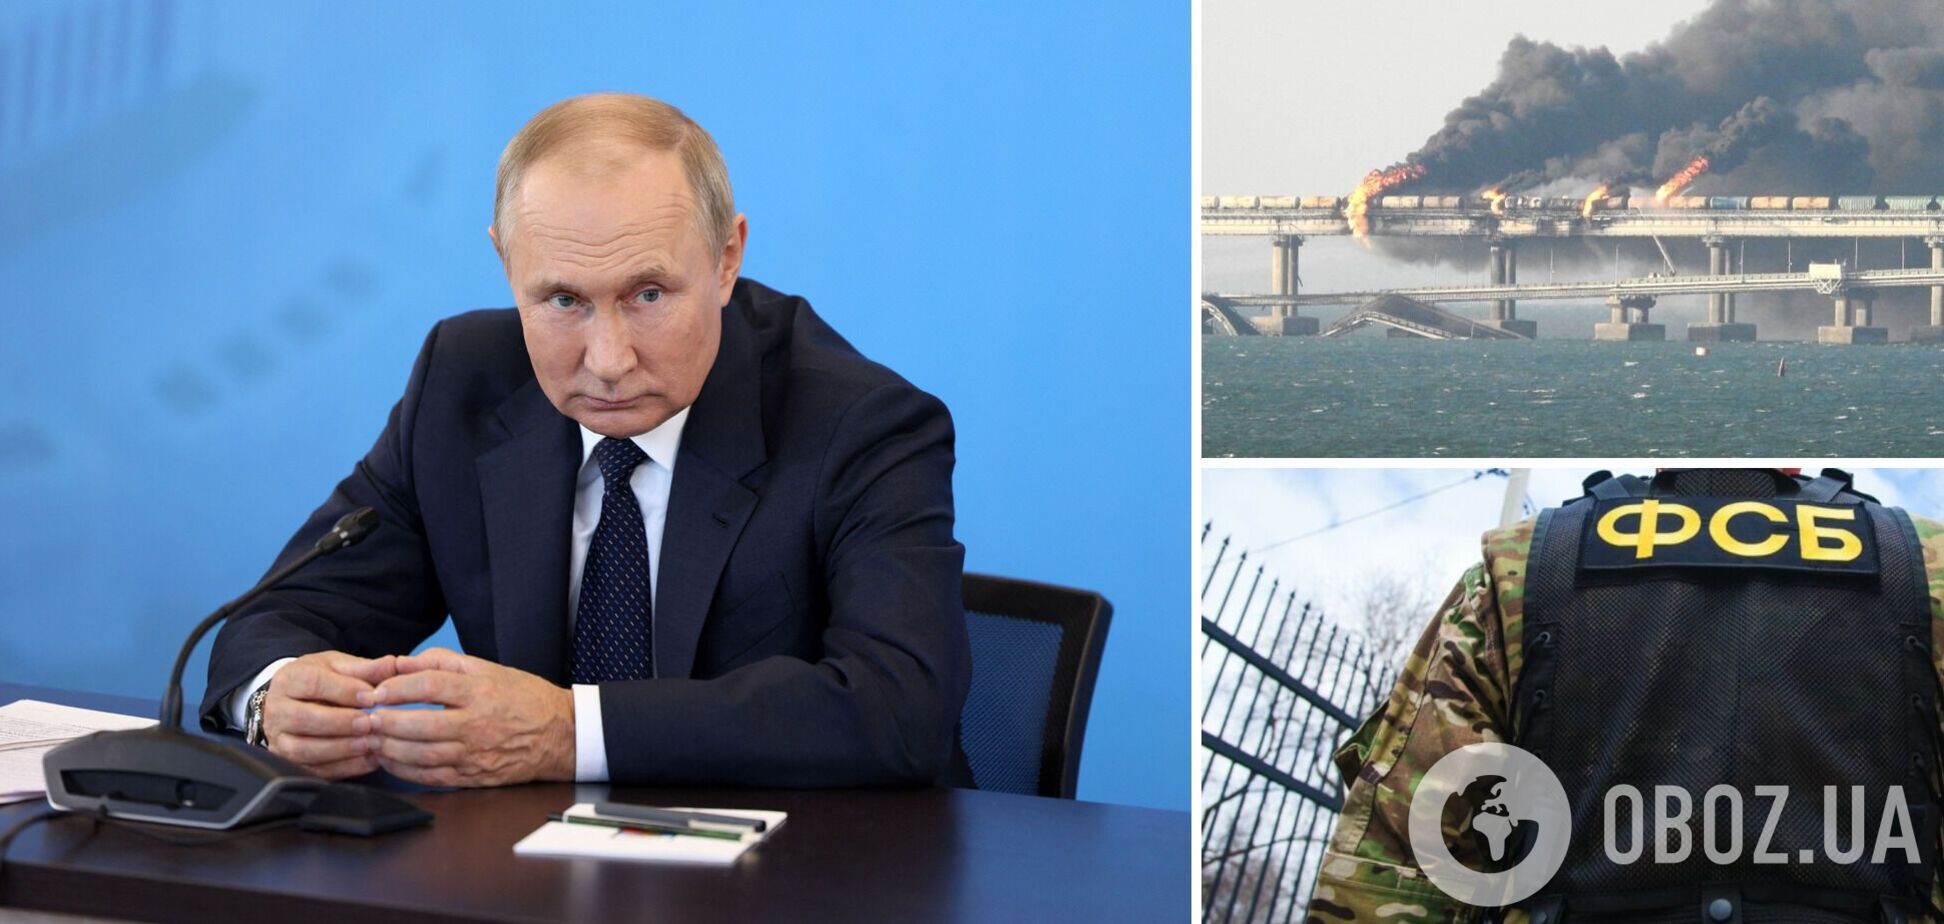 Путин поручил ФСБ обеспечивать защиту транспортного перехода через Керченский пролив после 'бавовны' на мосту